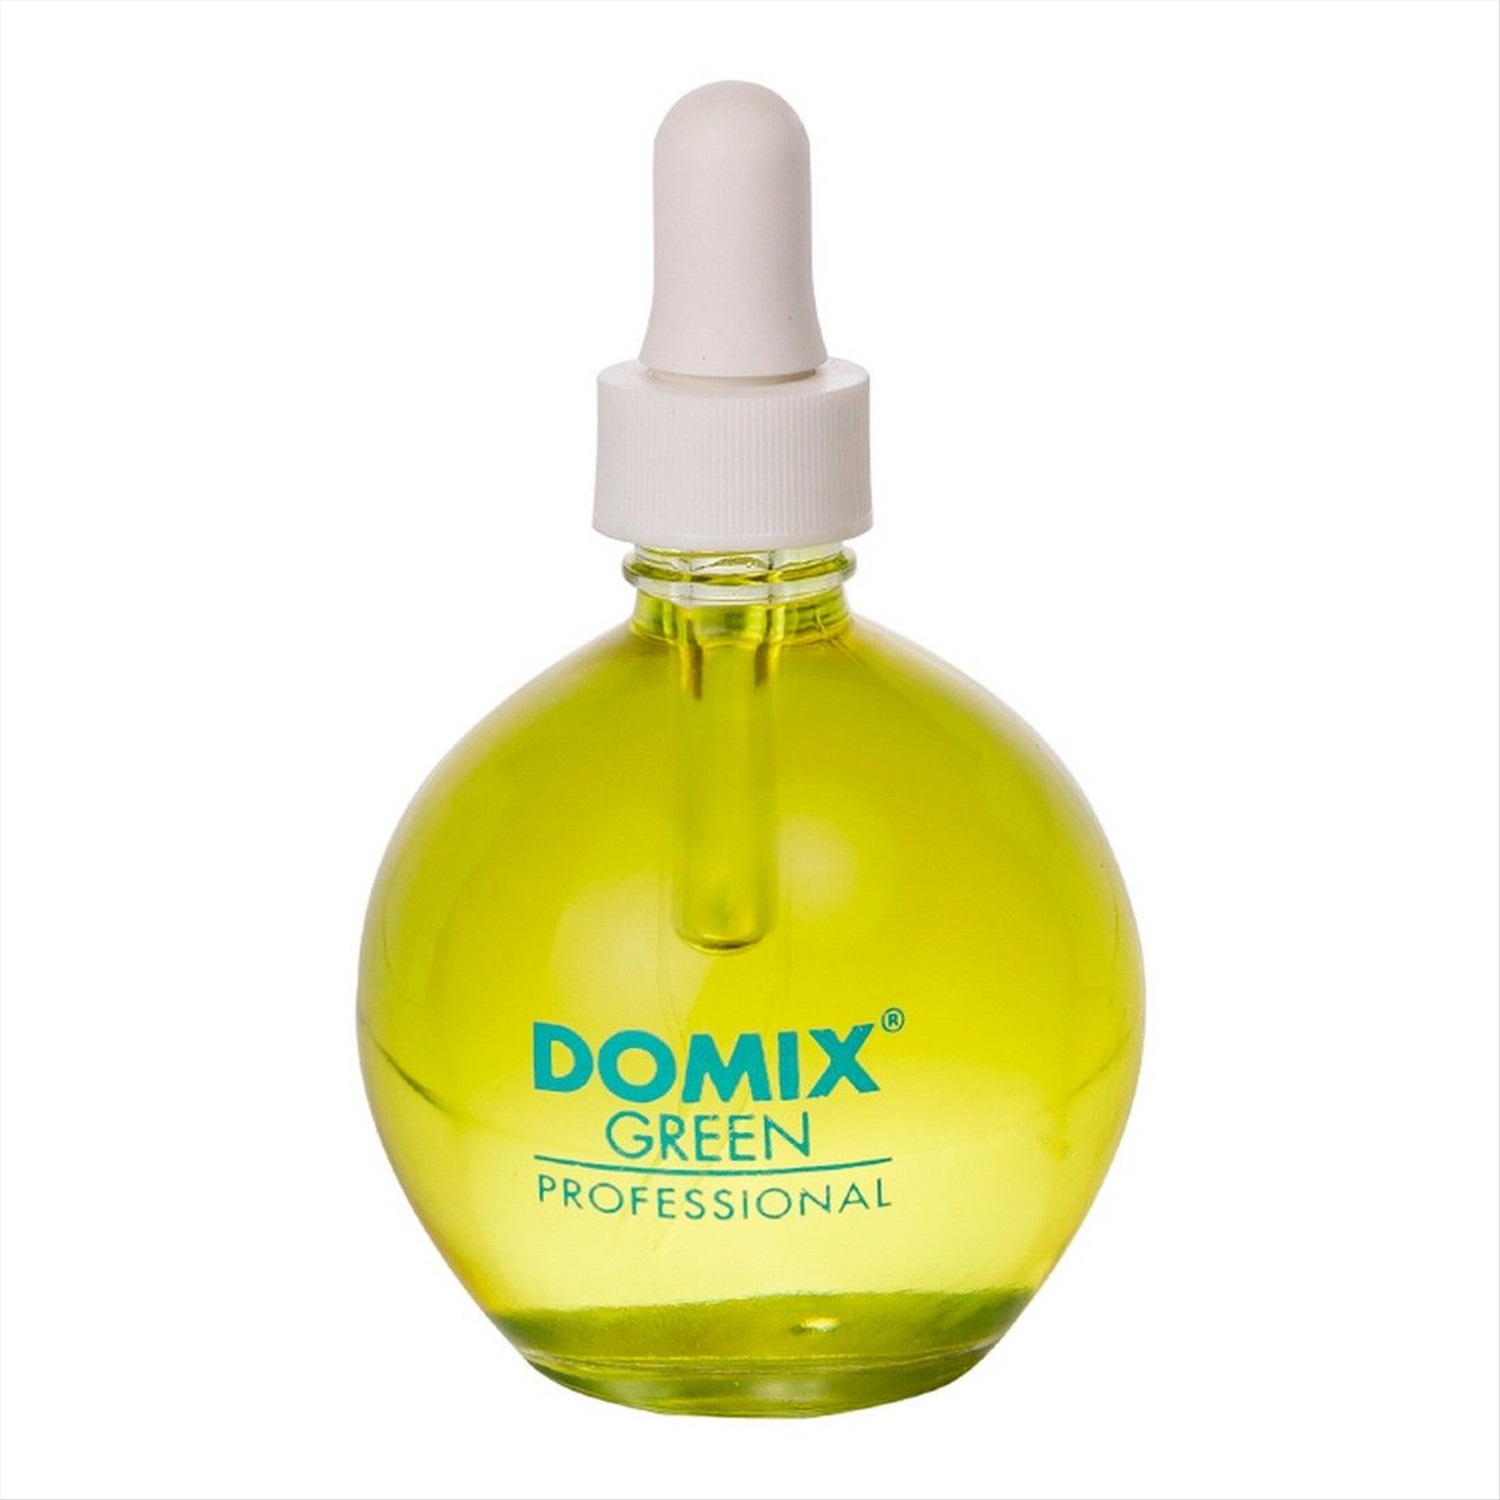 Крем масло для ногтей. Масло для кутикулы Domix. DGP масло для кутикулы "Арбуз". Domix Green professional масло. Domix DGP масло для кутикулы (пипетка) (75 мл).